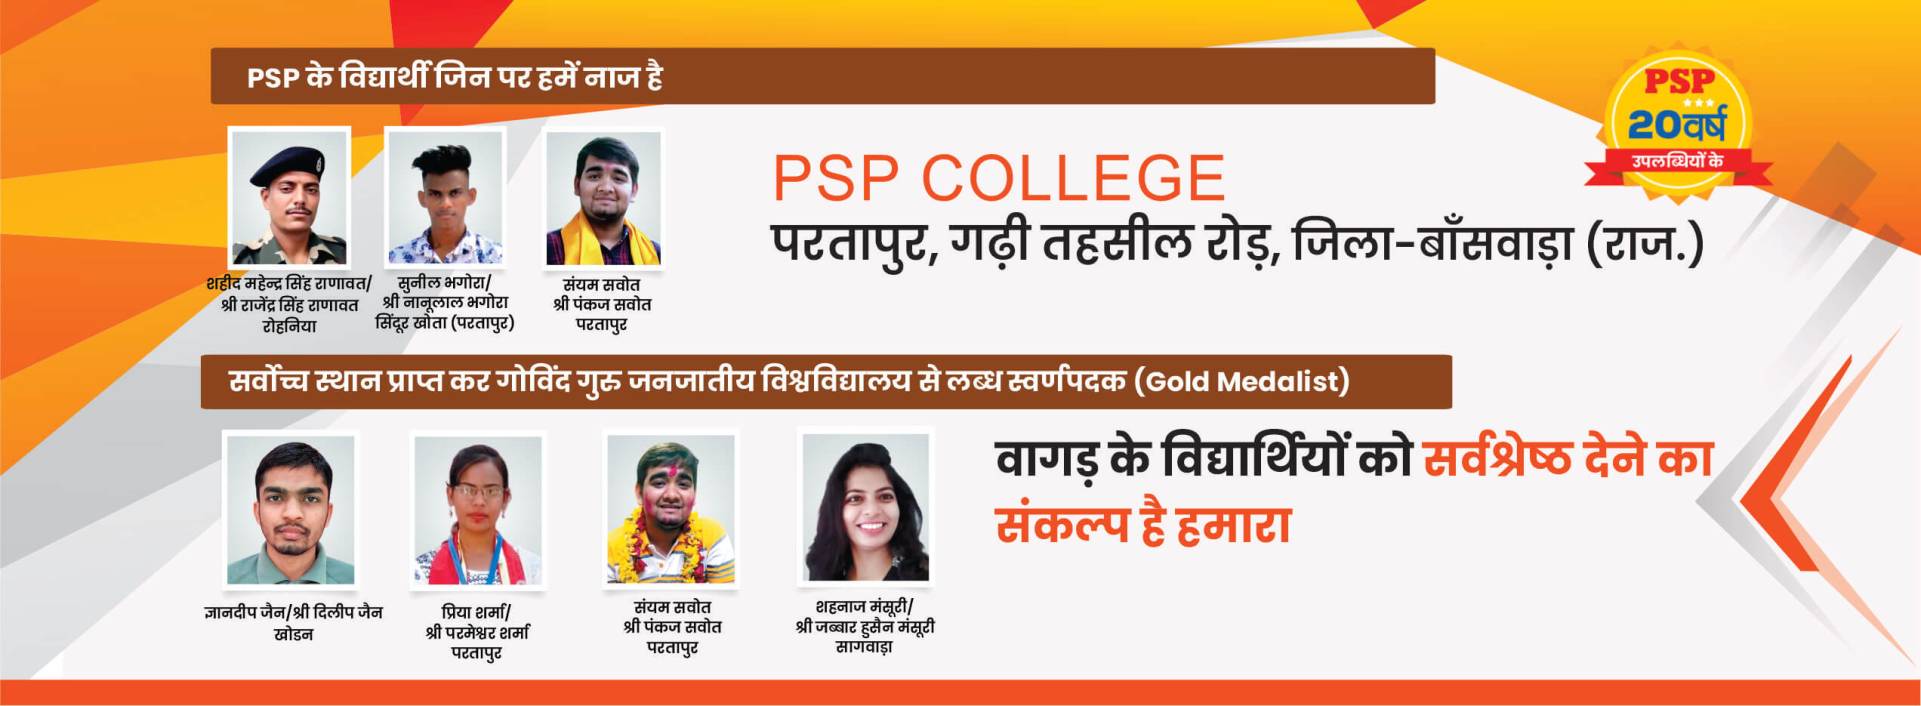 PSP College Partapur